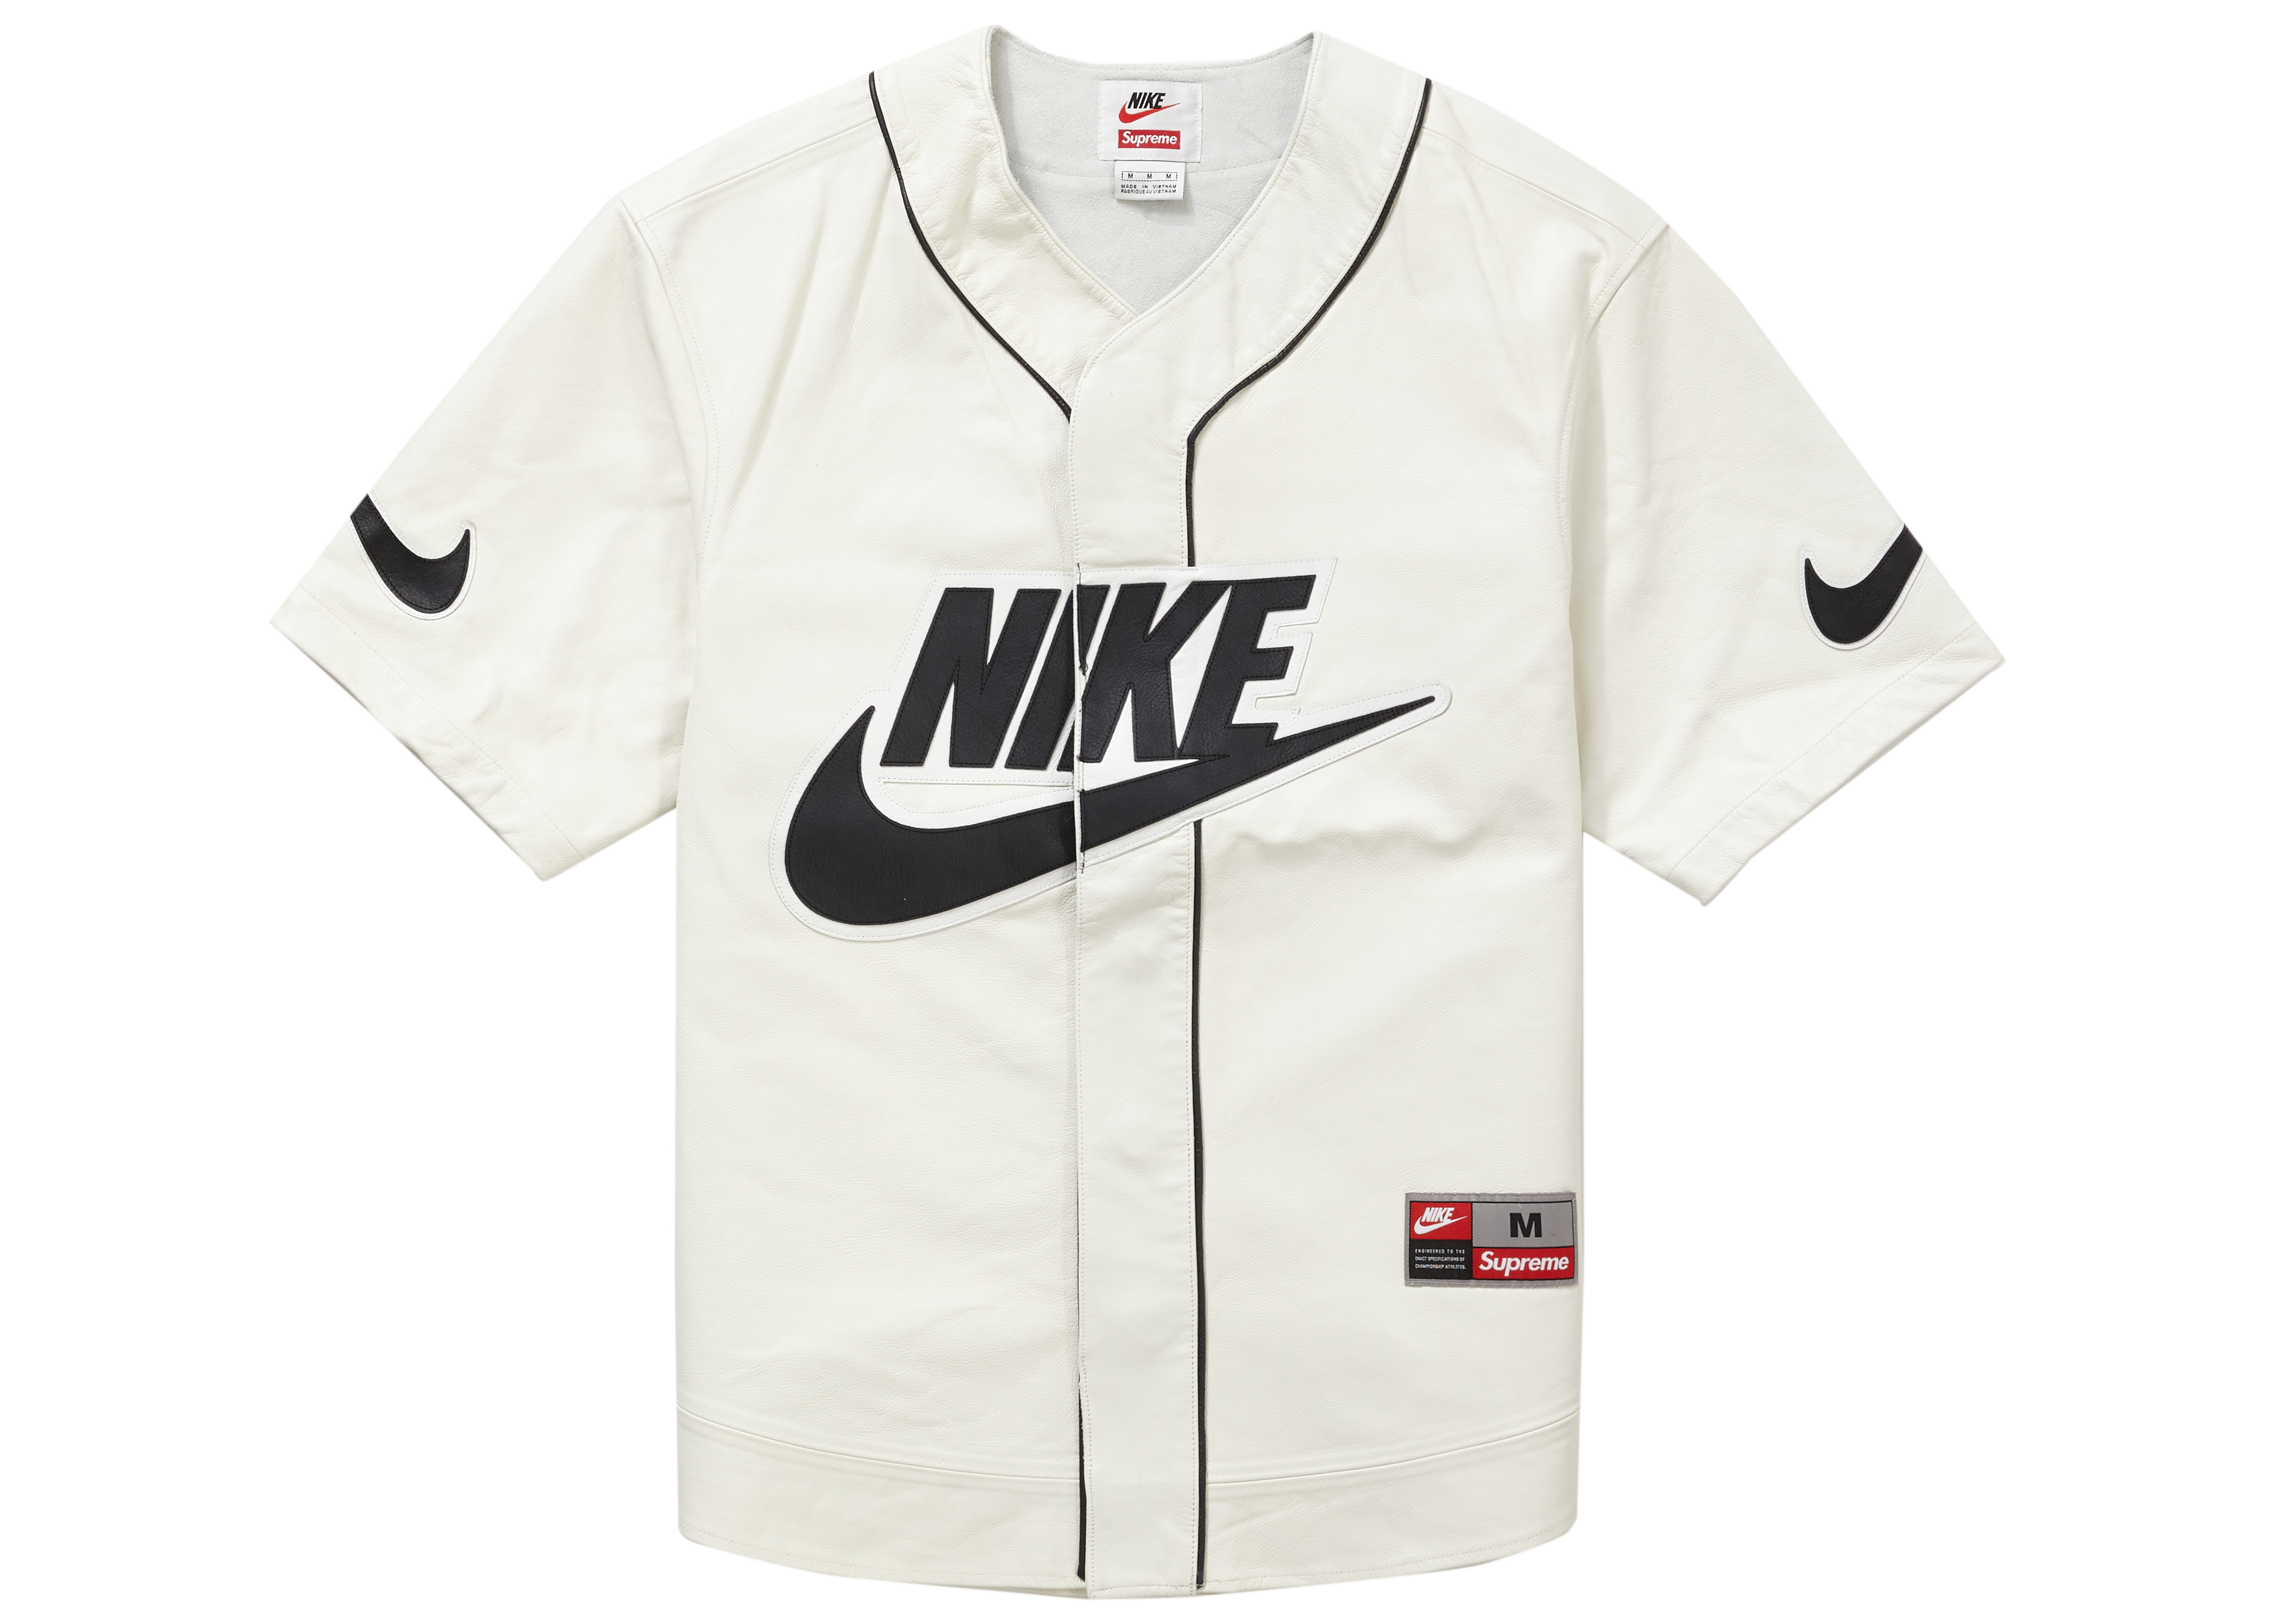 white baseball jersey